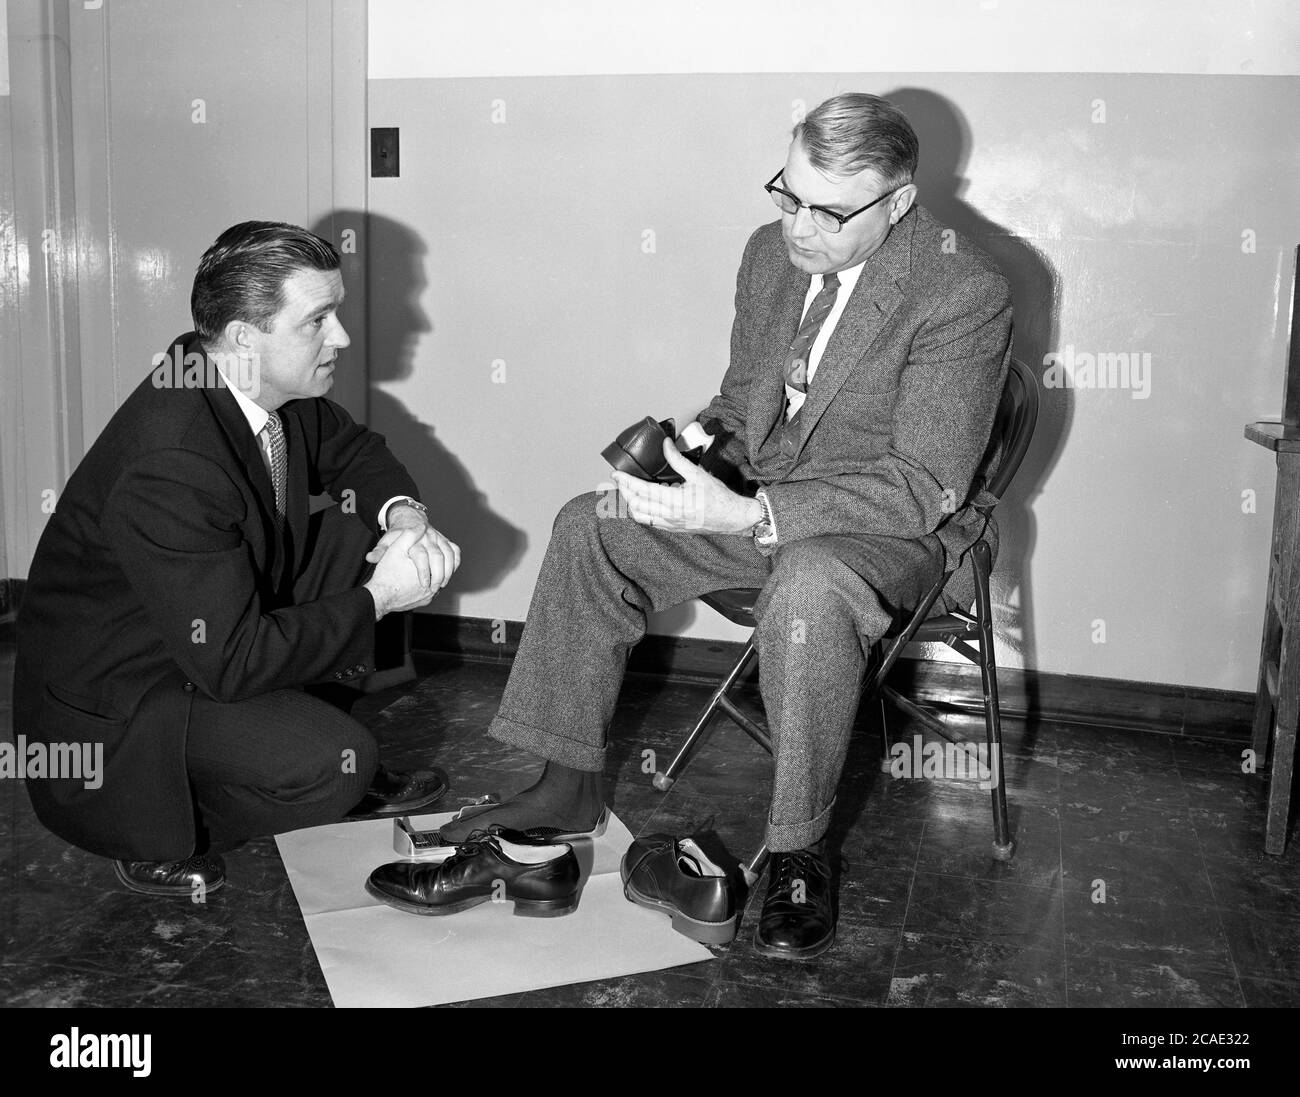 1940, historique, un vendeur de chaussures avec un client mâle dans une combinaison à carreaux intelligents considérant une nouvelle paire de chaussures. Le client a son pied droit dans une ancienne mesure de pied métallique ou une jauge de raccord, qui mesure la longueur et la largeur du pied. Connu sous le nom de Brannock Device, après son inventeur Charles F. Brannock, il a été introduit en 1927 et a été utilisé pour mesurer la taille de la chaussure d'une personne, en mesurant la longueur, la largeur et la longueur de la voûte plantaire du pied. Banque D'Images